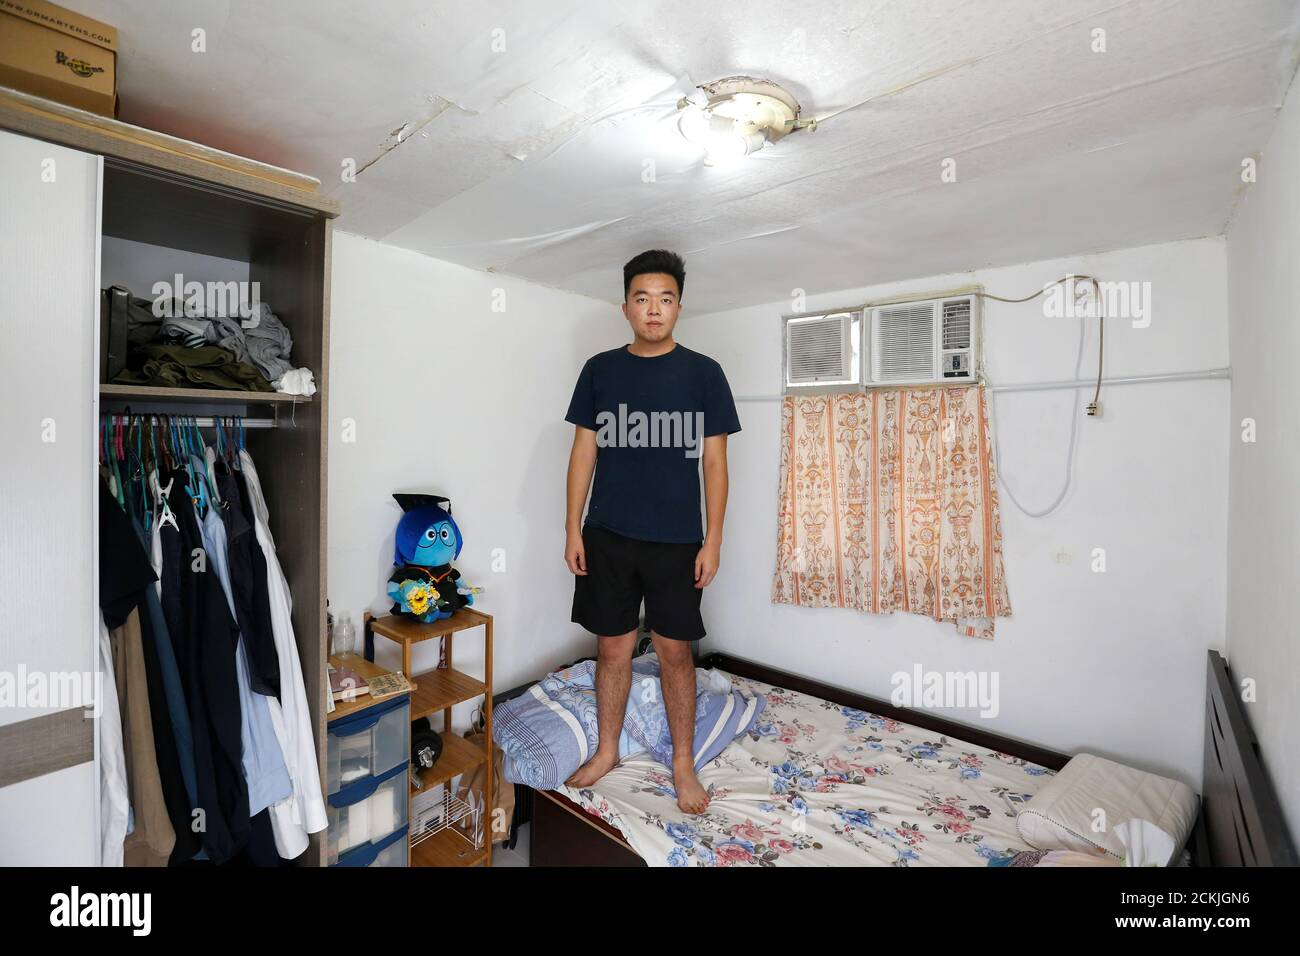 Roy Lam, residente nativo de Hong Kong, de 23 años, que trabaja en HR, y vive con su madre y cuatro hermanas, se presenta para una foto en su dormitorio de 7 metros cuadrados del apartamento de su familia en Hong Kong, China, el 30 de junio de 2019. "Más bien perdemos estar de pie que perder sentarnos", dijo Lam. Añadió que los jóvenes estaban decididos a defender lo que se merecía, pero era difícil mantenerse positivos. "A veces también pensamos que "vamos a renunciar, vamos a mudarnos a otro lugar". REUTERS/Thomas Peter BUSCA 'YOUNG HK' PARA ESTA HISTORIA. BUSQUE "IMAGEN MÁS AMPLIA" PARA TODAS LAS HISTORIAS. Foto de stock